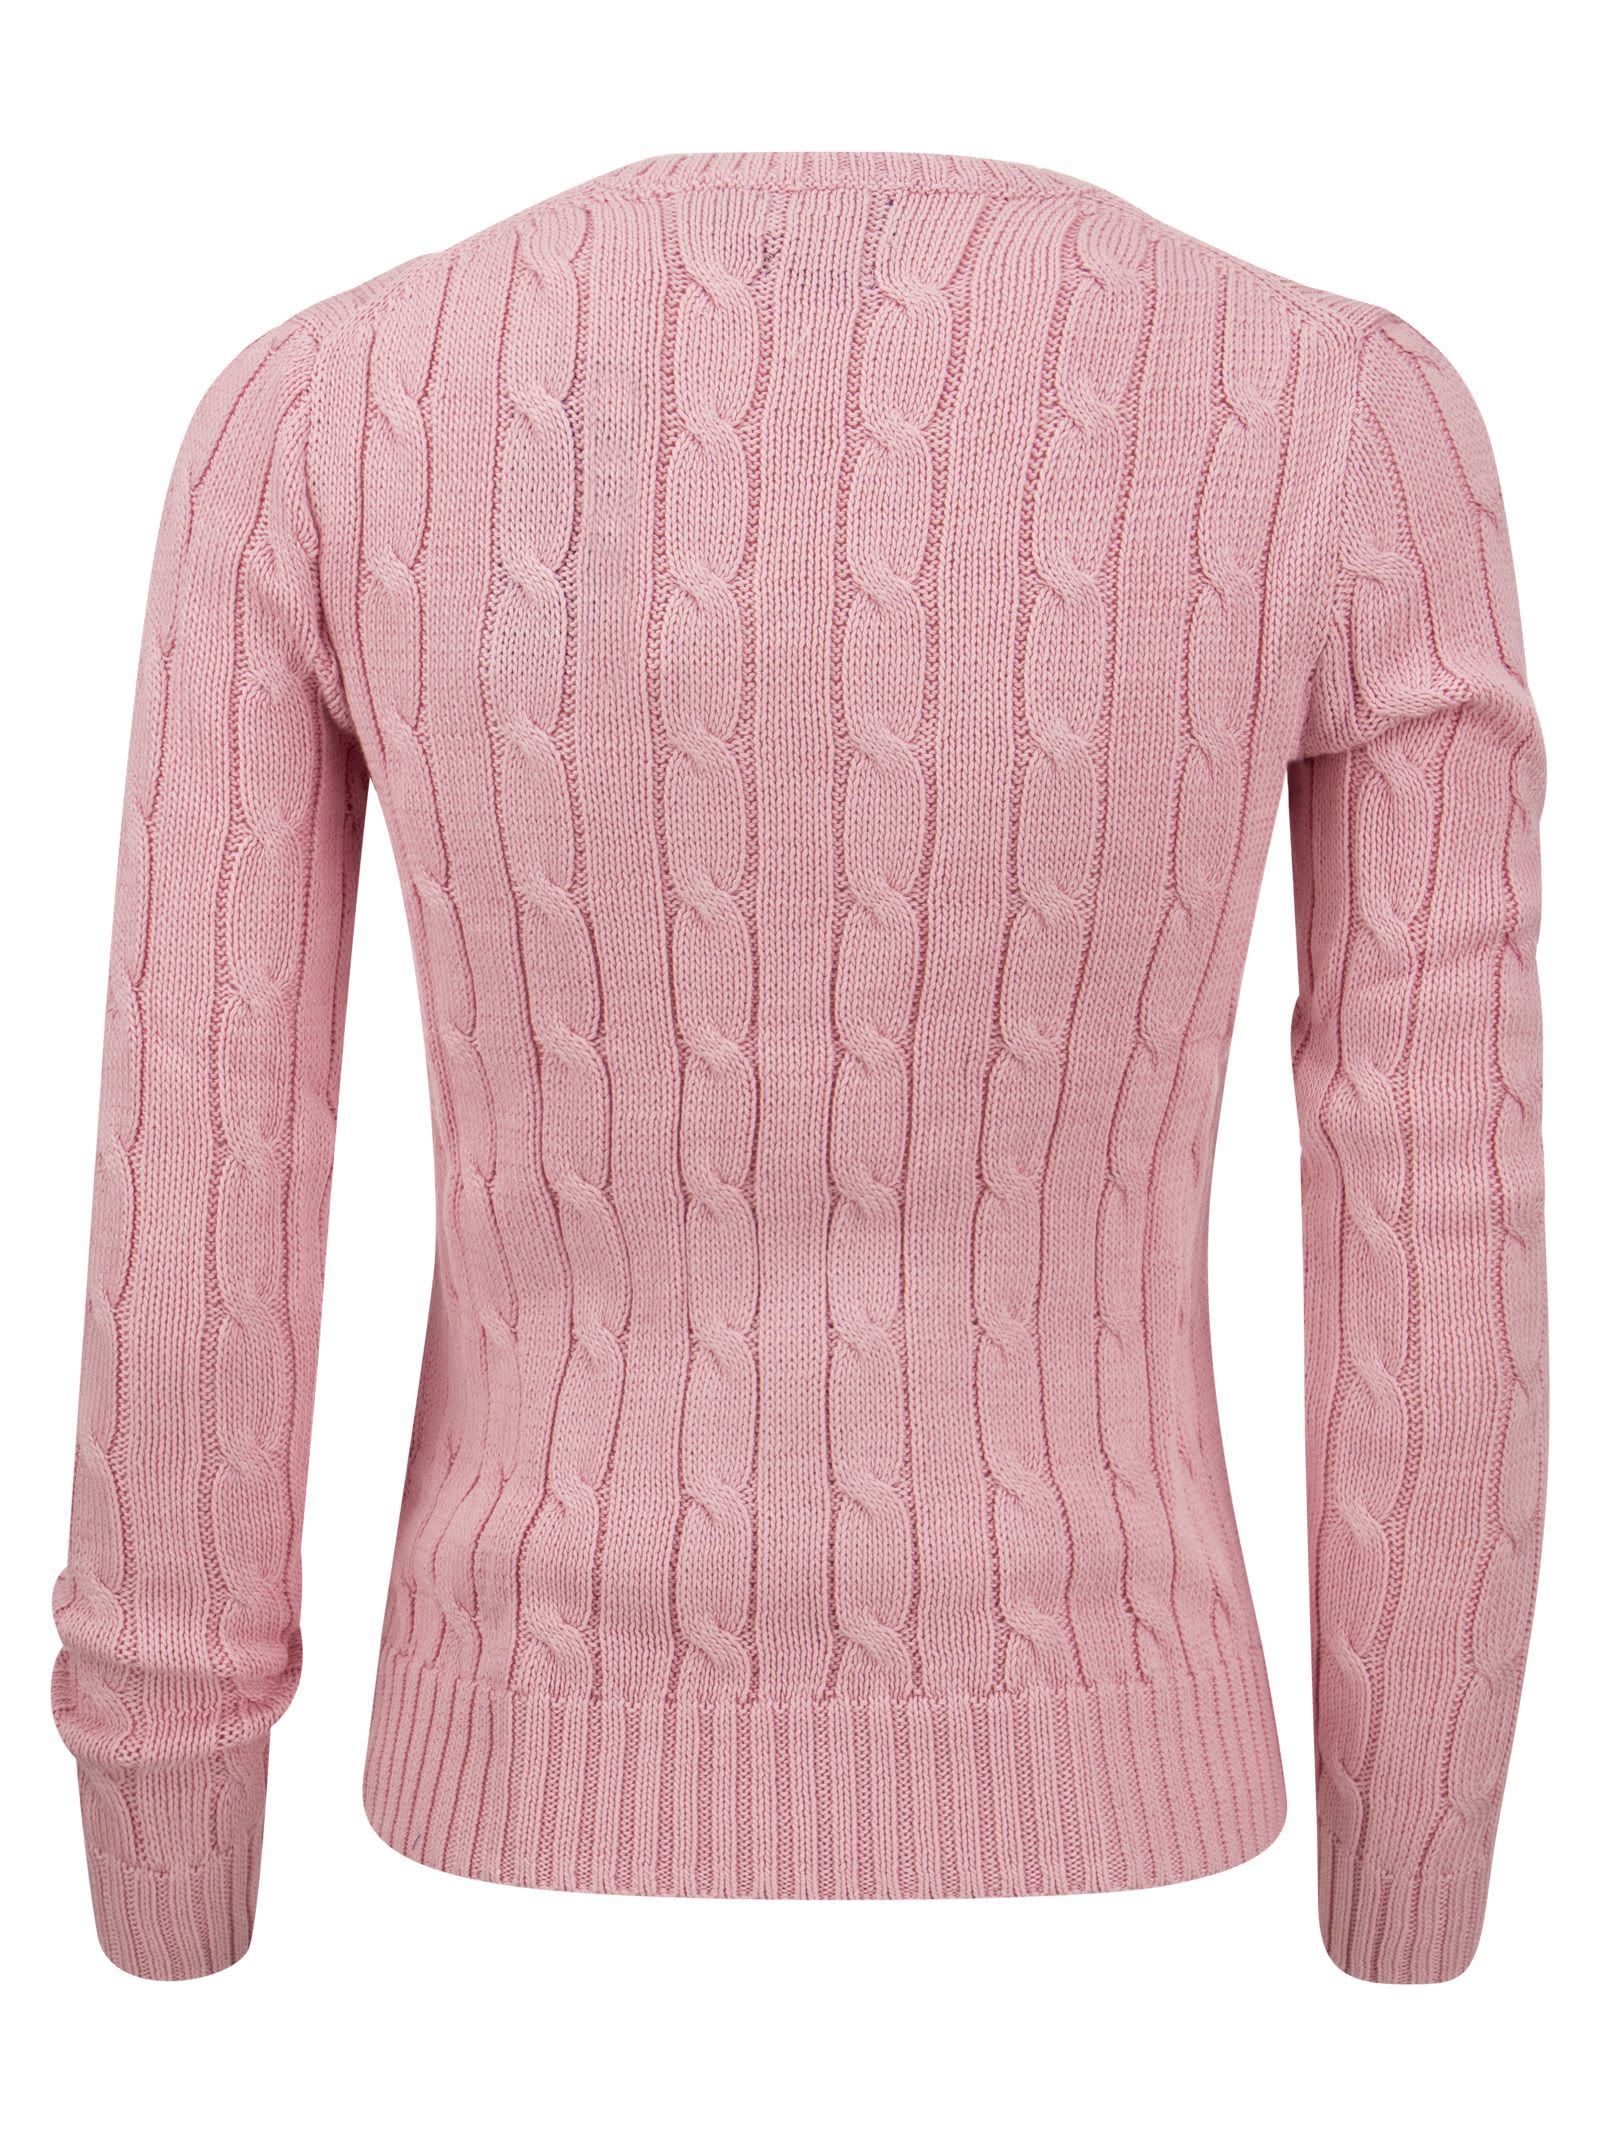 Women's Slim Fit Cable-Knit Sweater, Ralph Lauren